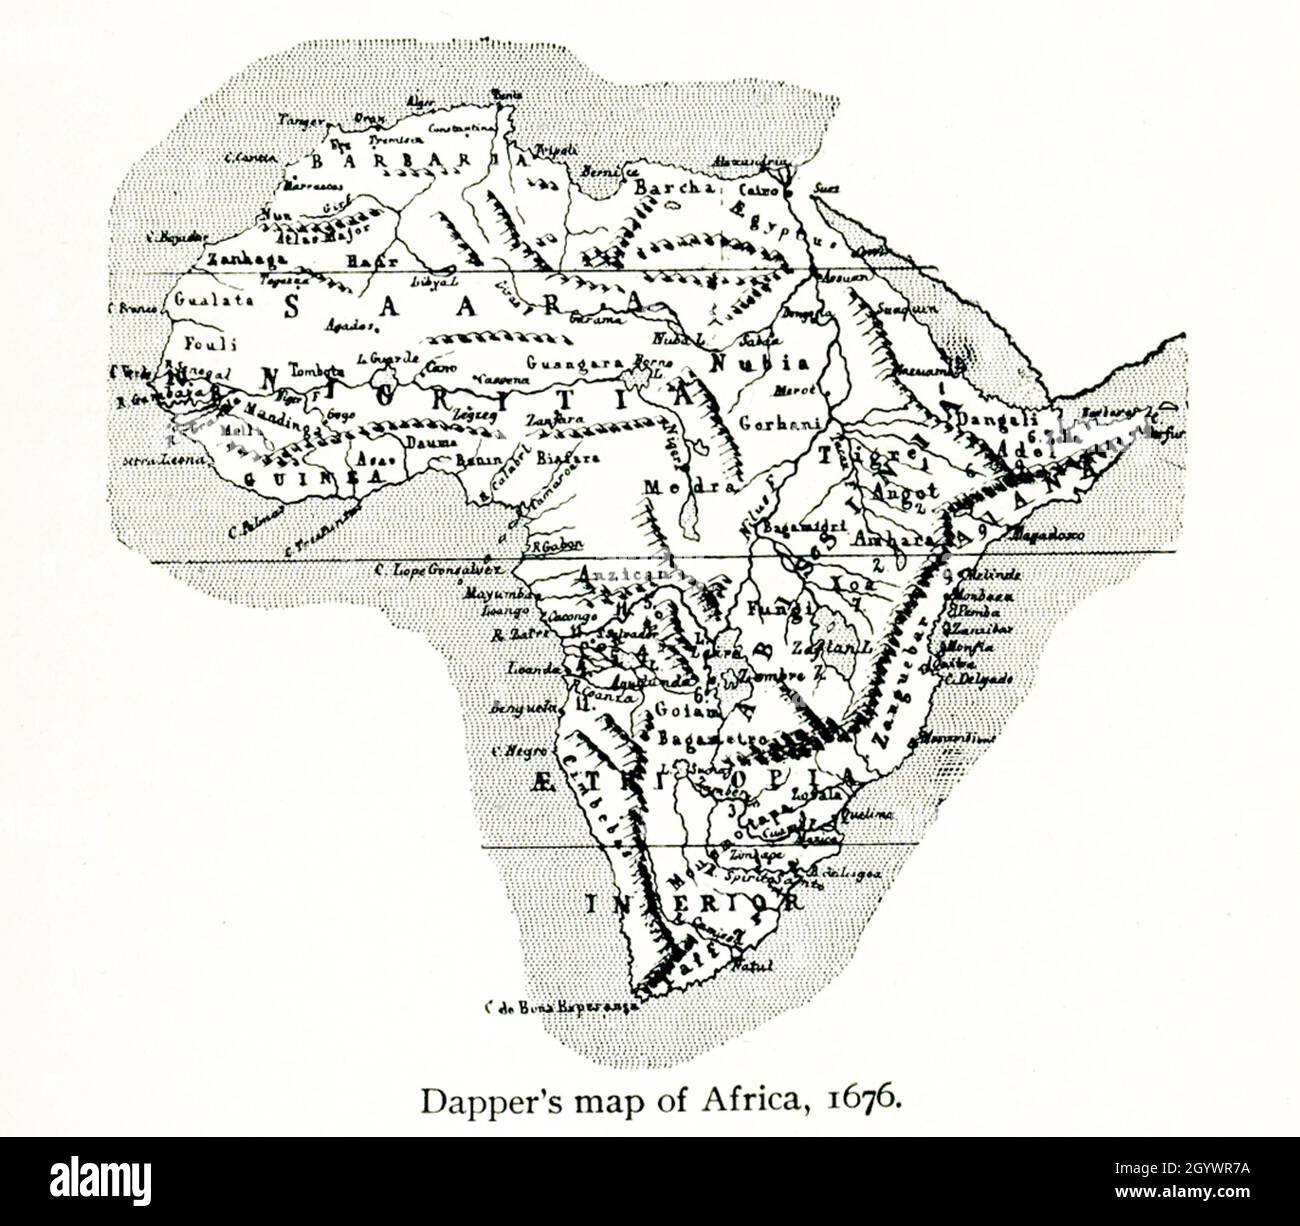 Diese Karte von Dapper zeigt Afrika im Jahr 1686. Olfert Dapper (1636 –1689) war ein niederländischer Arzt und Schriftsteller. Er schrieb Bücher über Weltgeschichte und Geographie, obwohl er nie außerhalb der Niederlande reiste. Seine „Beschreibung Afrikas“, veröffentlicht 1668), ist ein Schlüsseltext für Afrikanstudien – und diese Karte begleitet den Text. Stockfoto